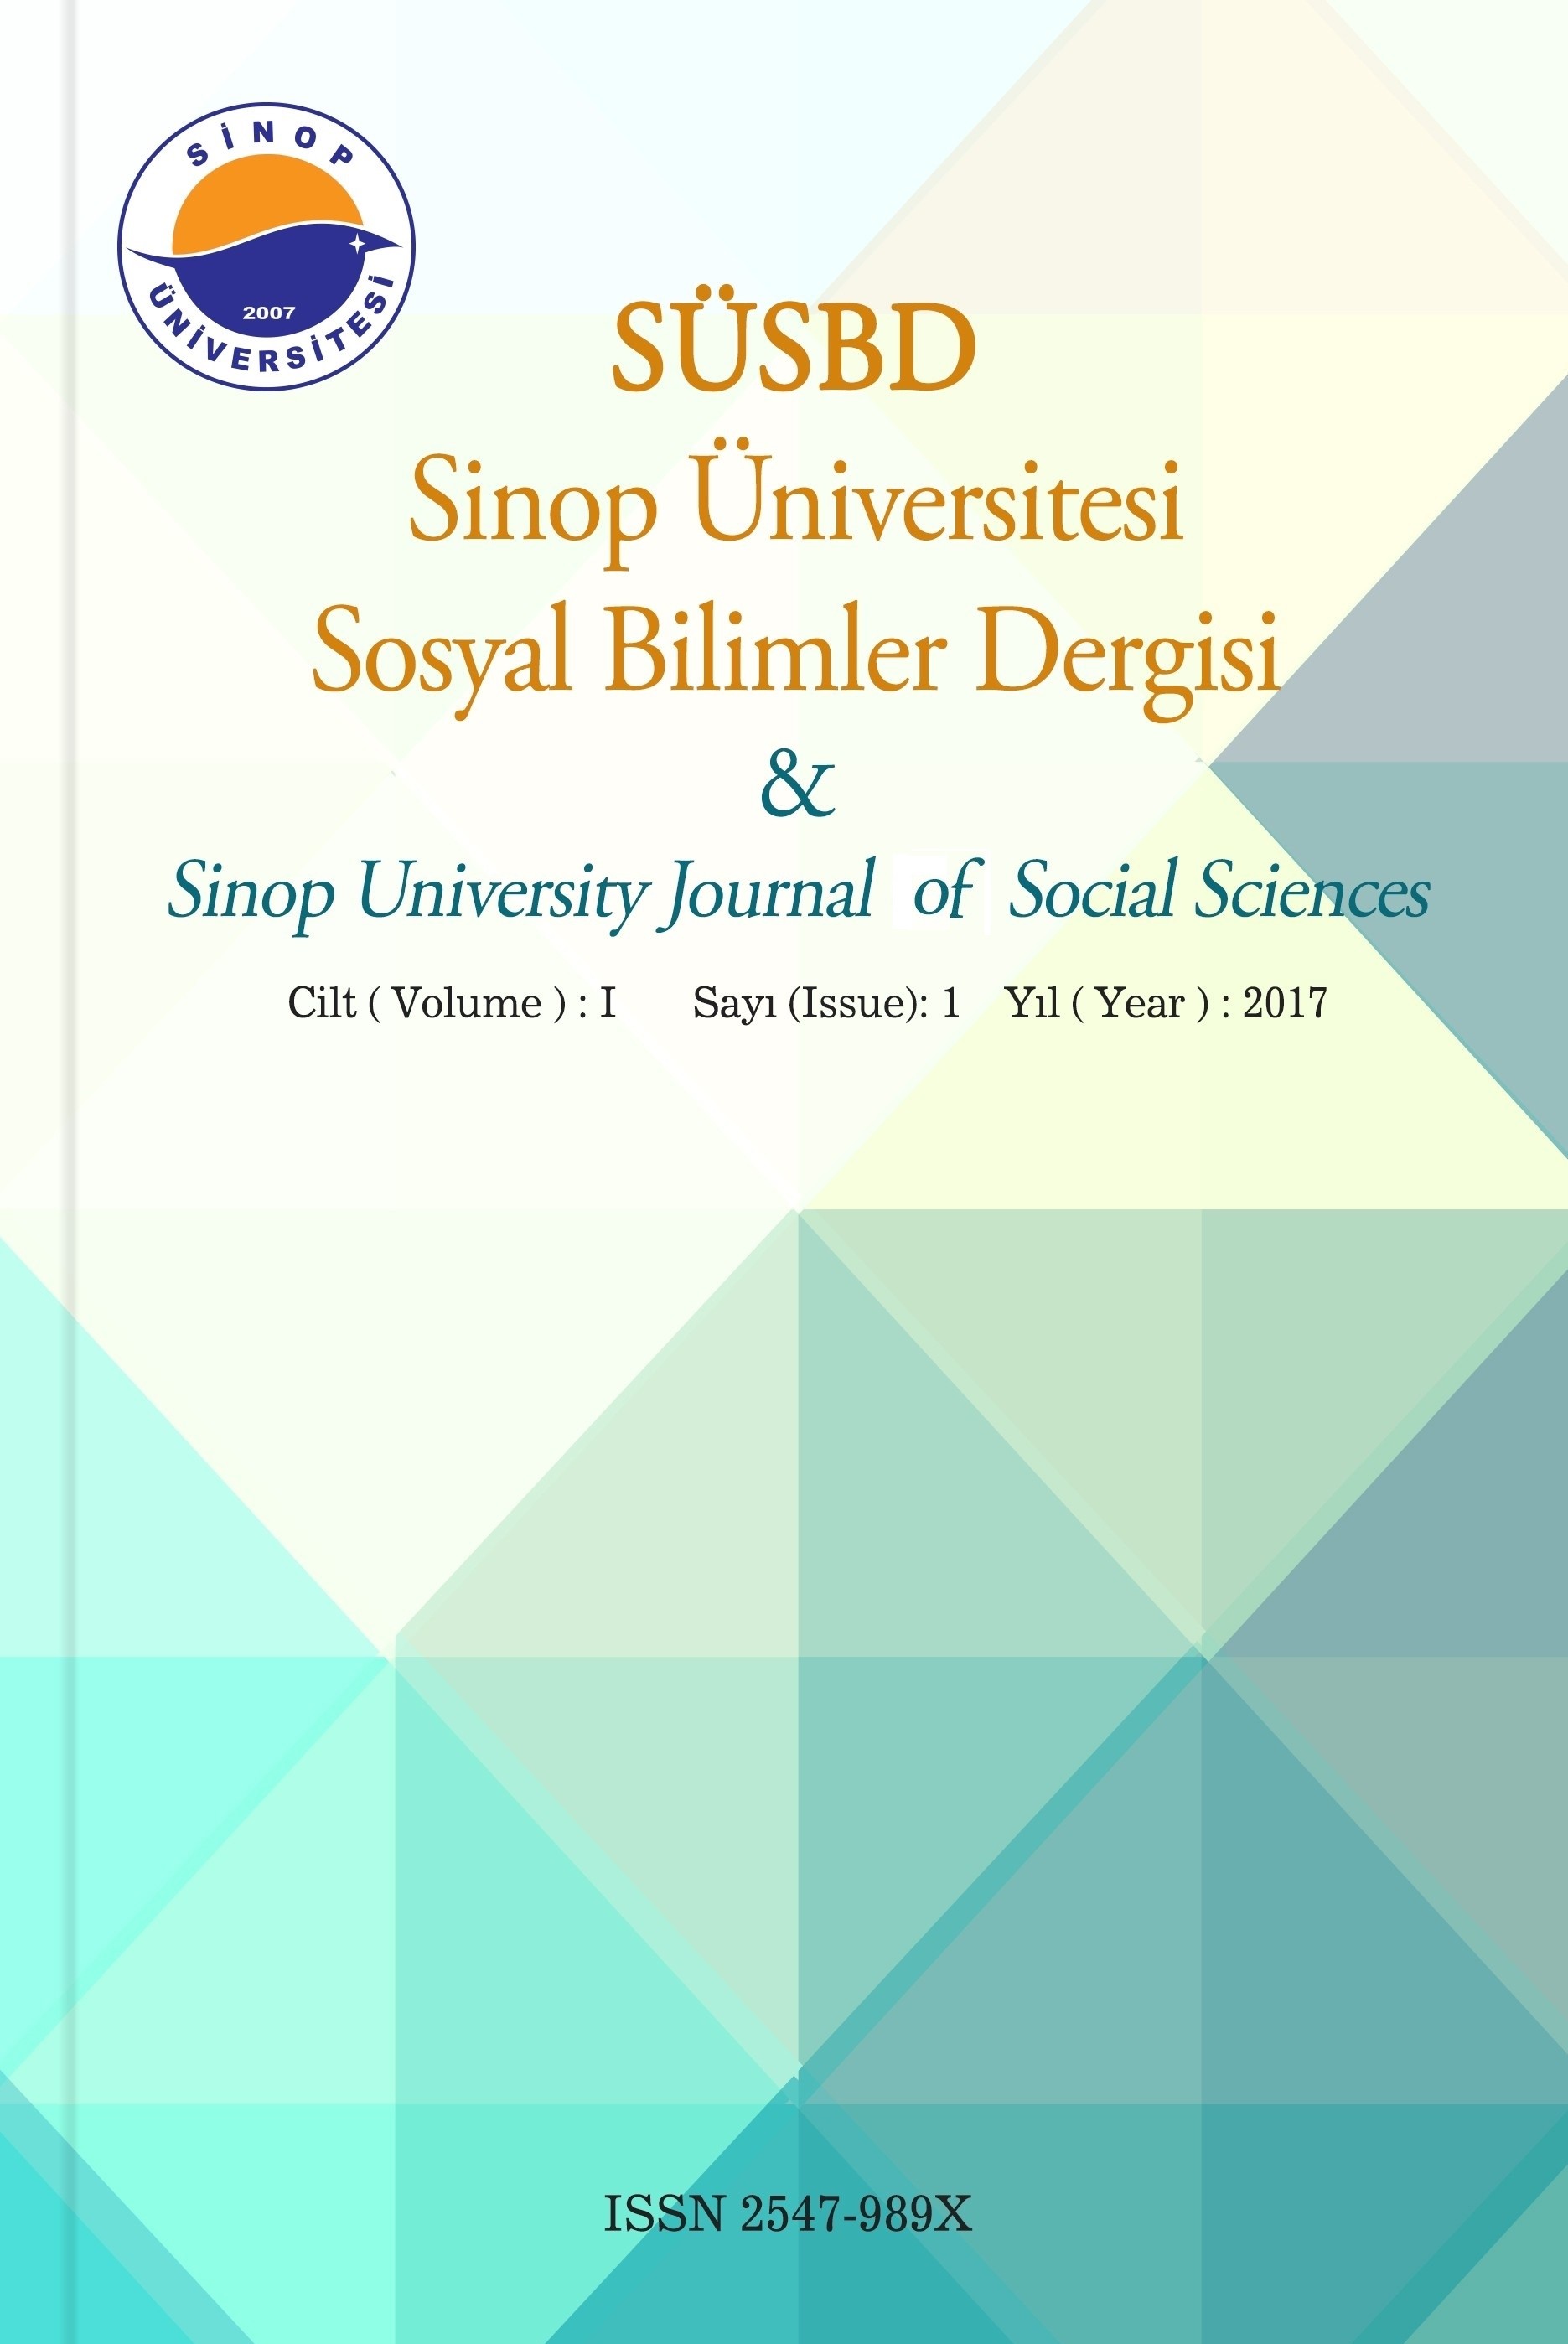 Sinop Üniversitesi Sosyal Bilimler Dergisi